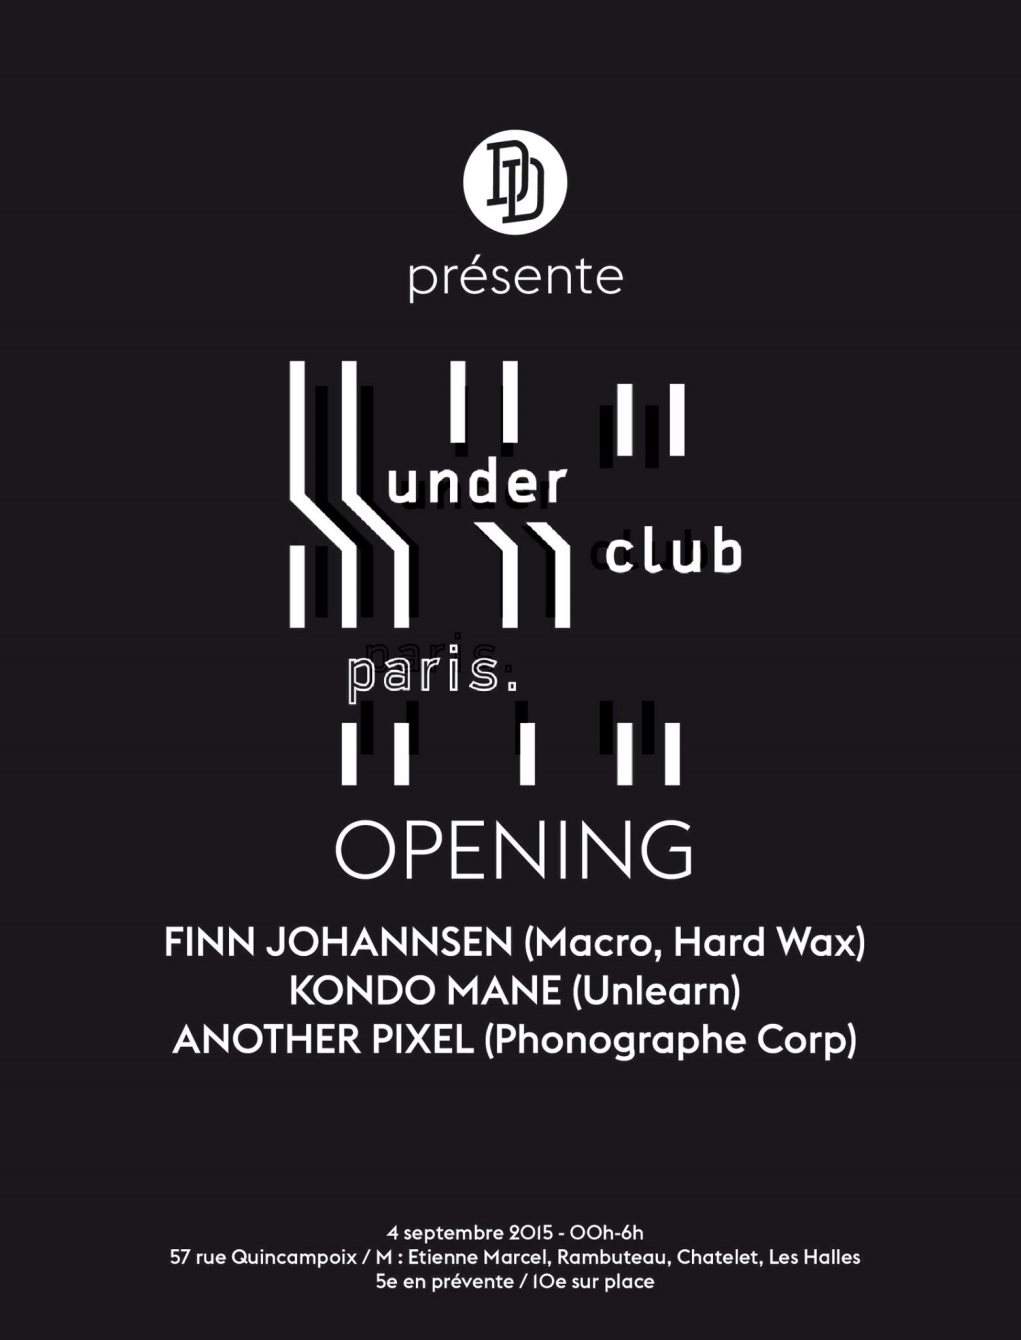 Opening Underclub - Digger's Delight Présente Finn Johannsen, Kondo Mane - Página frontal